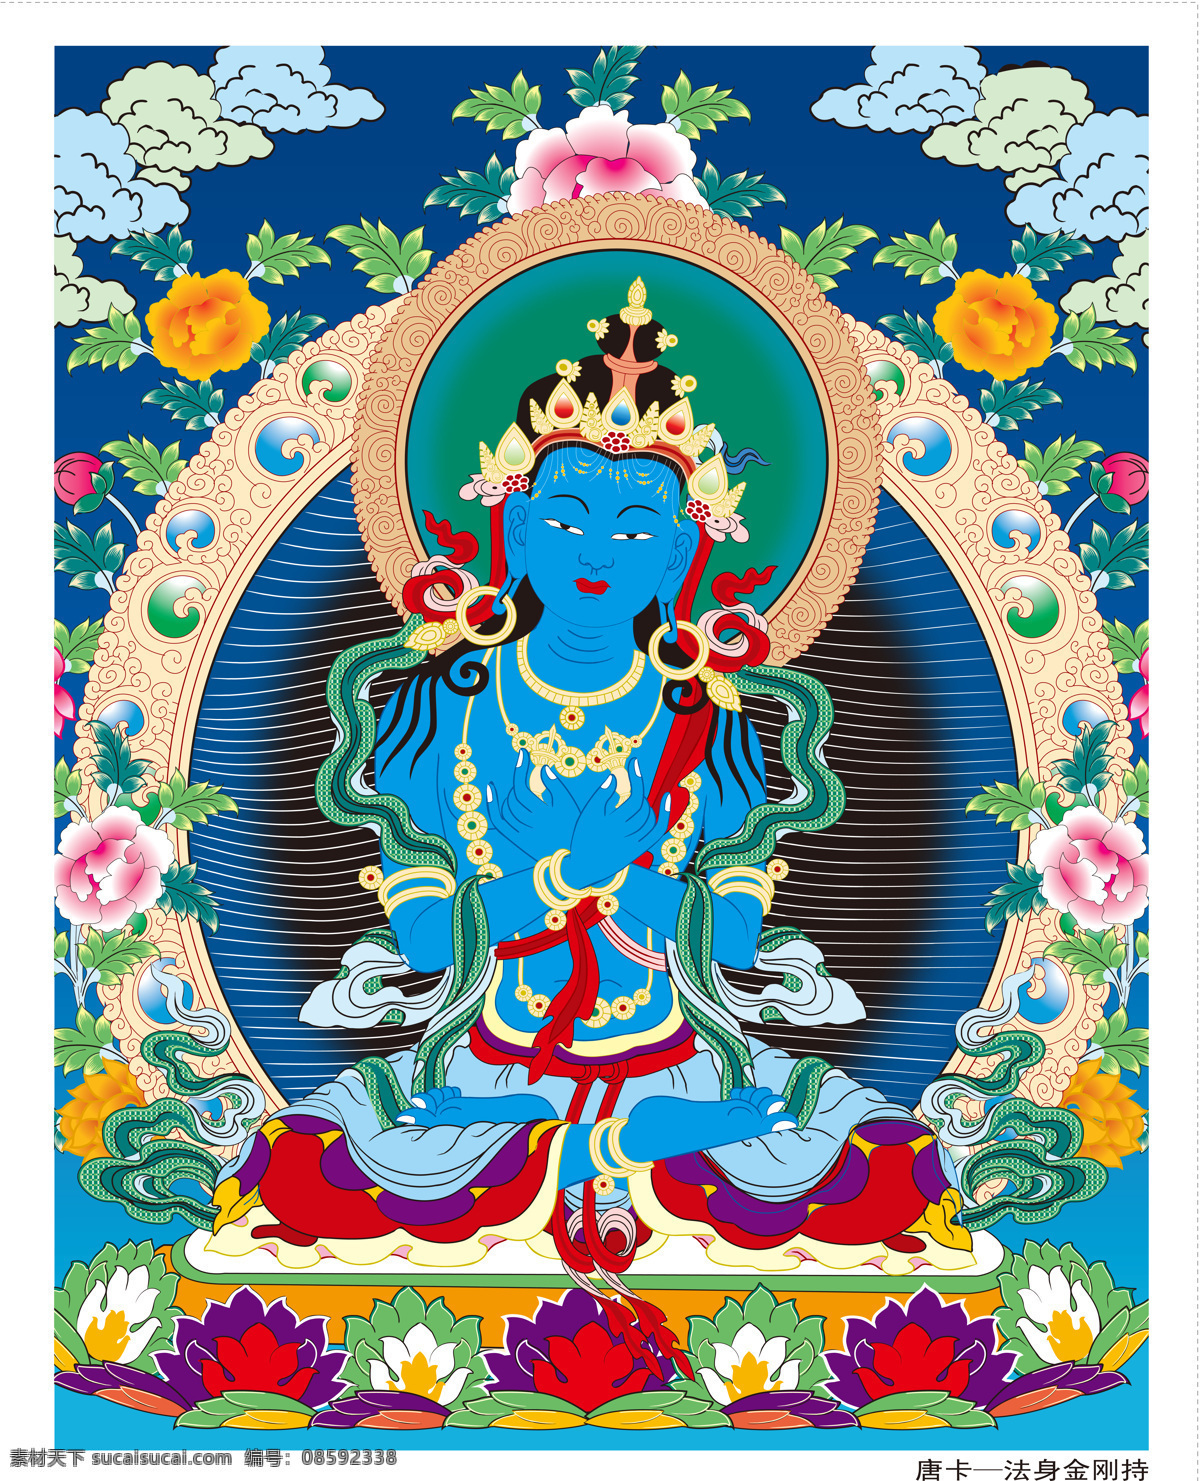 唐卡 法身金刚持 法身 金刚持 西藏 佛教 藏传佛教 密宗 宗教信仰 文化艺术